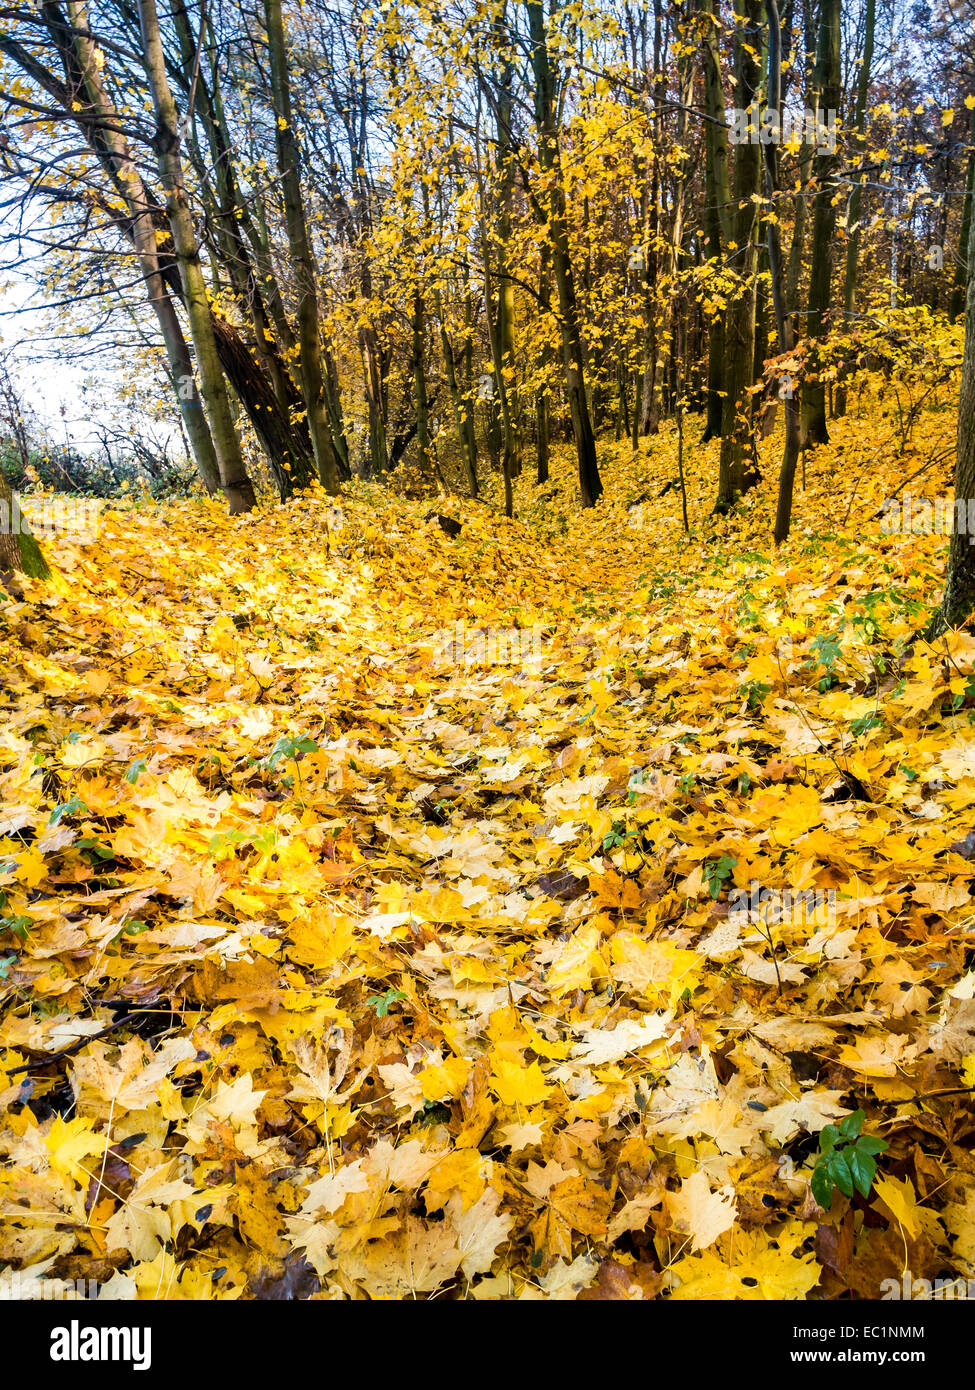 Ravine chemin dans la forêt couverte de feuilles mortes en couleurs d'automne Banque D'Images